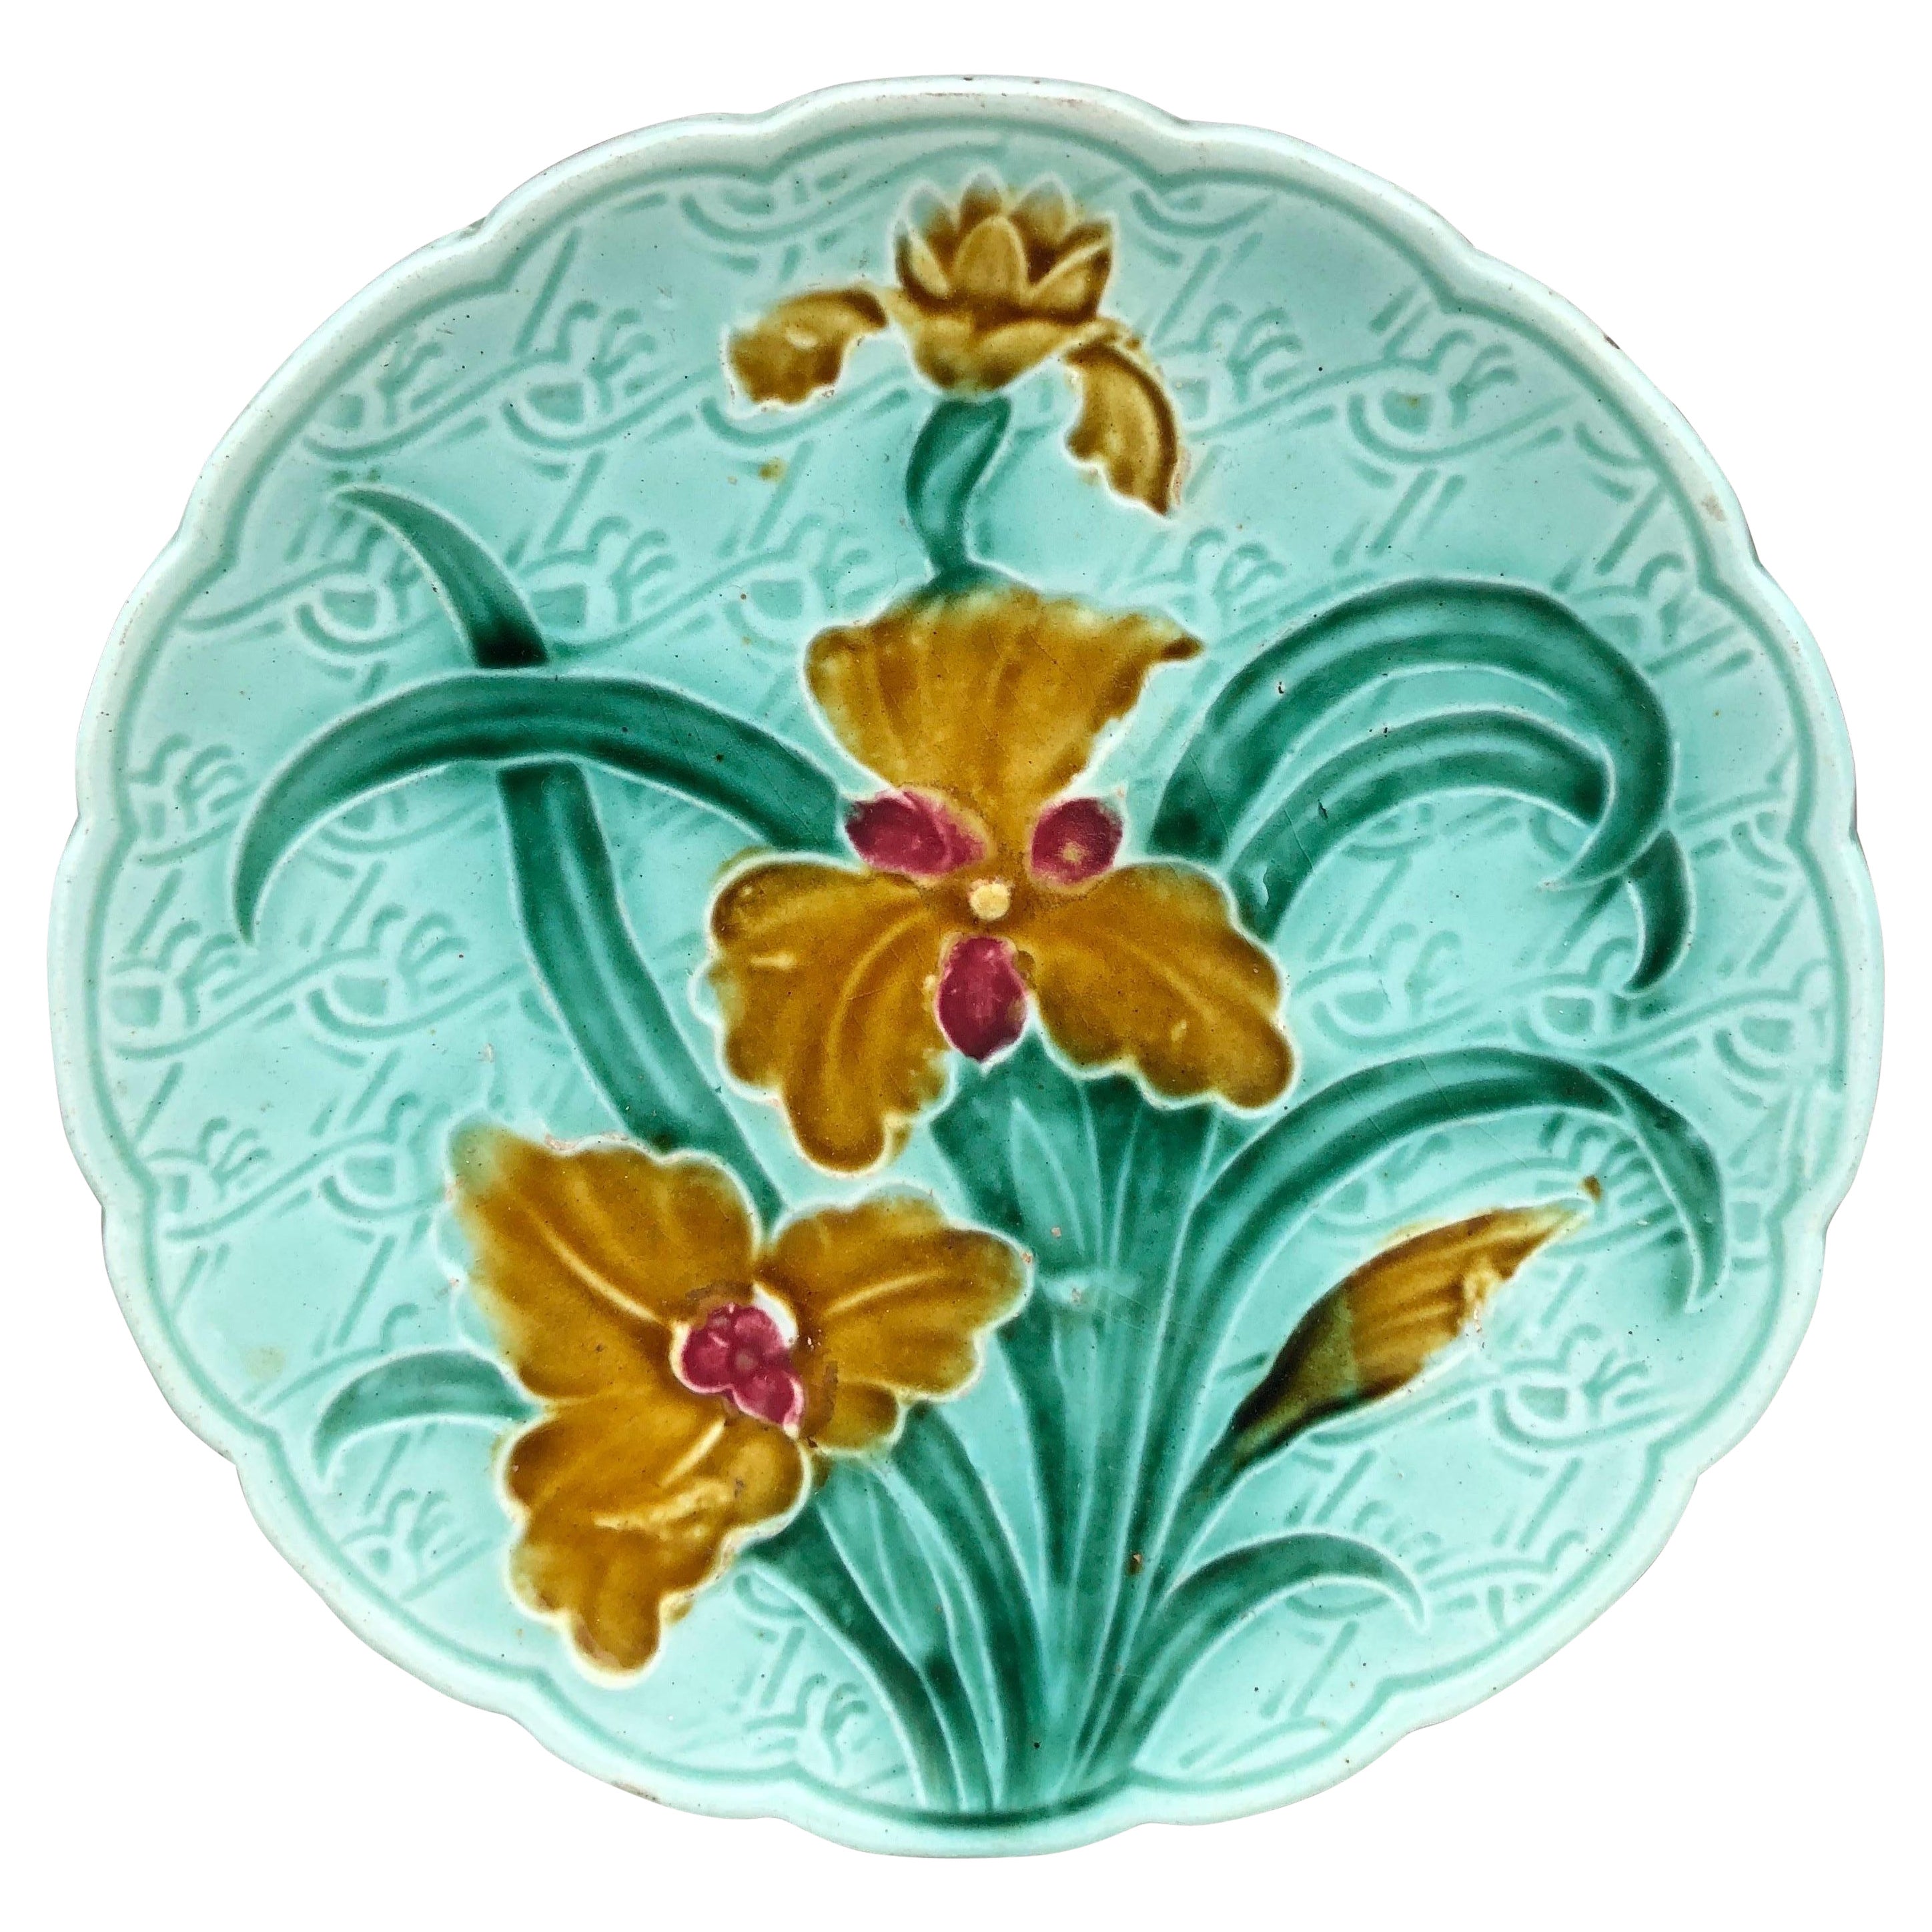 Petite assiette Iris en majolique allemande, vers 1900